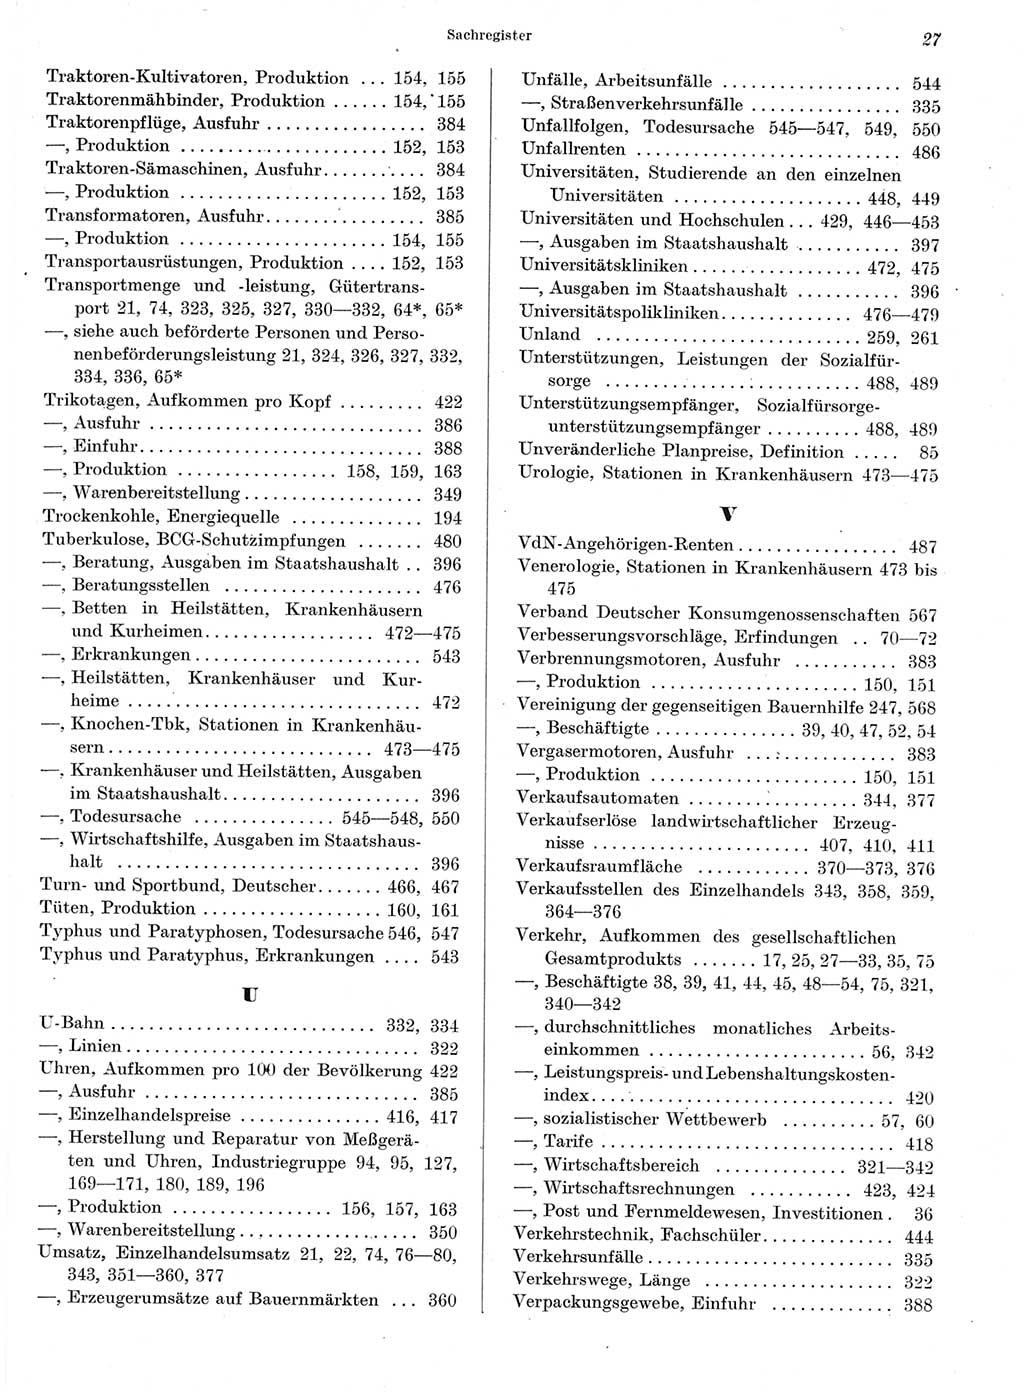 Statistisches Jahrbuch der Deutschen Demokratischen Republik (DDR) 1964, Seite 27 (Stat. Jb. DDR 1964, S. 27)